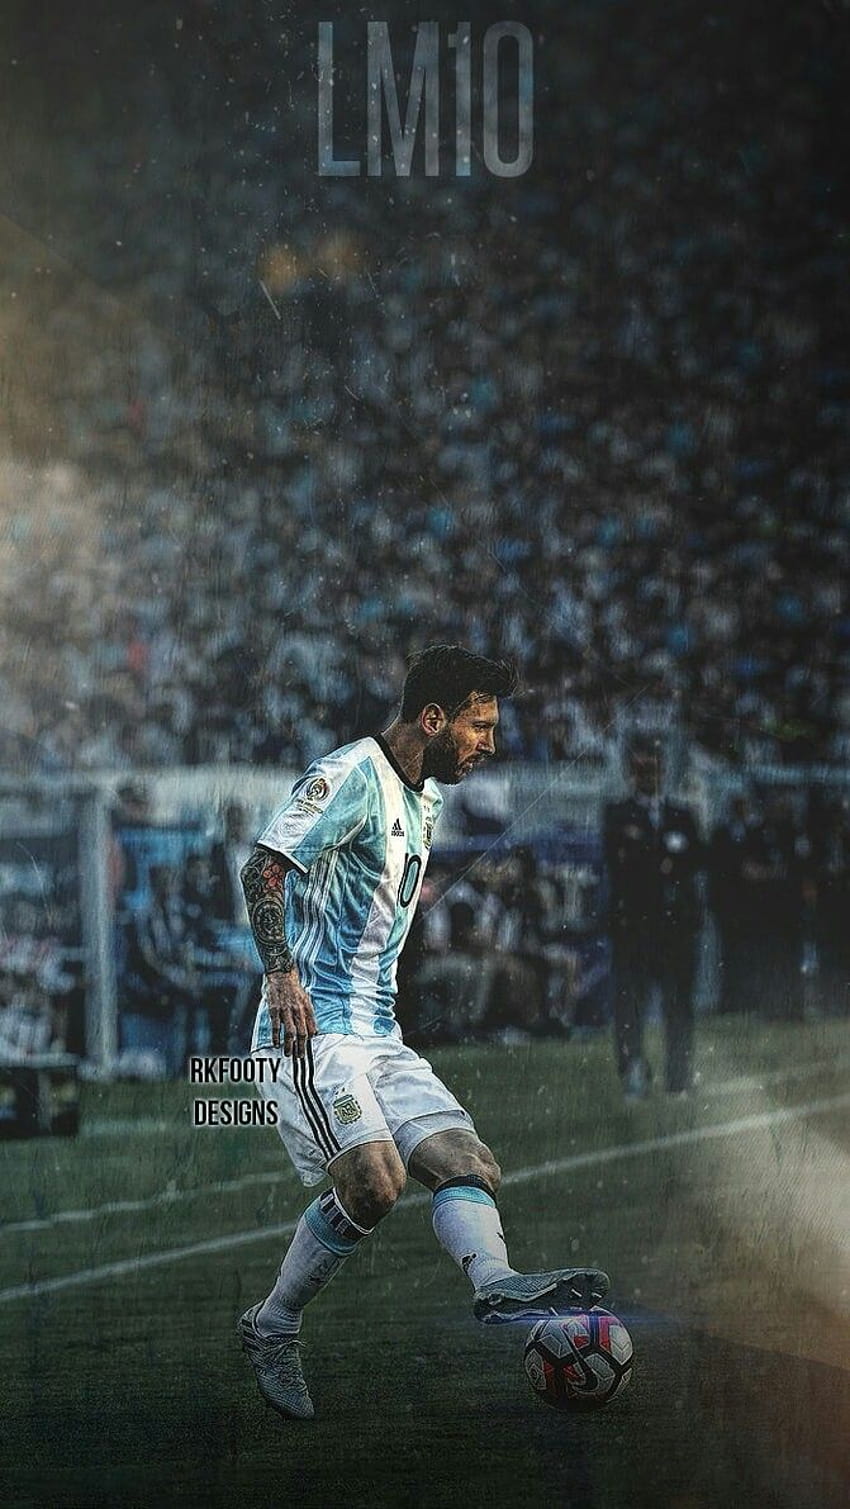 Hình nền Messi là niềm tự hào của bất cứ ai yêu bóng đá và Messi. Hãy xem hình nền này để cảm nhận sự mạnh mẽ, tinh tế và tài năng của một trong những cầu thủ vĩ đại nhất thế giới.